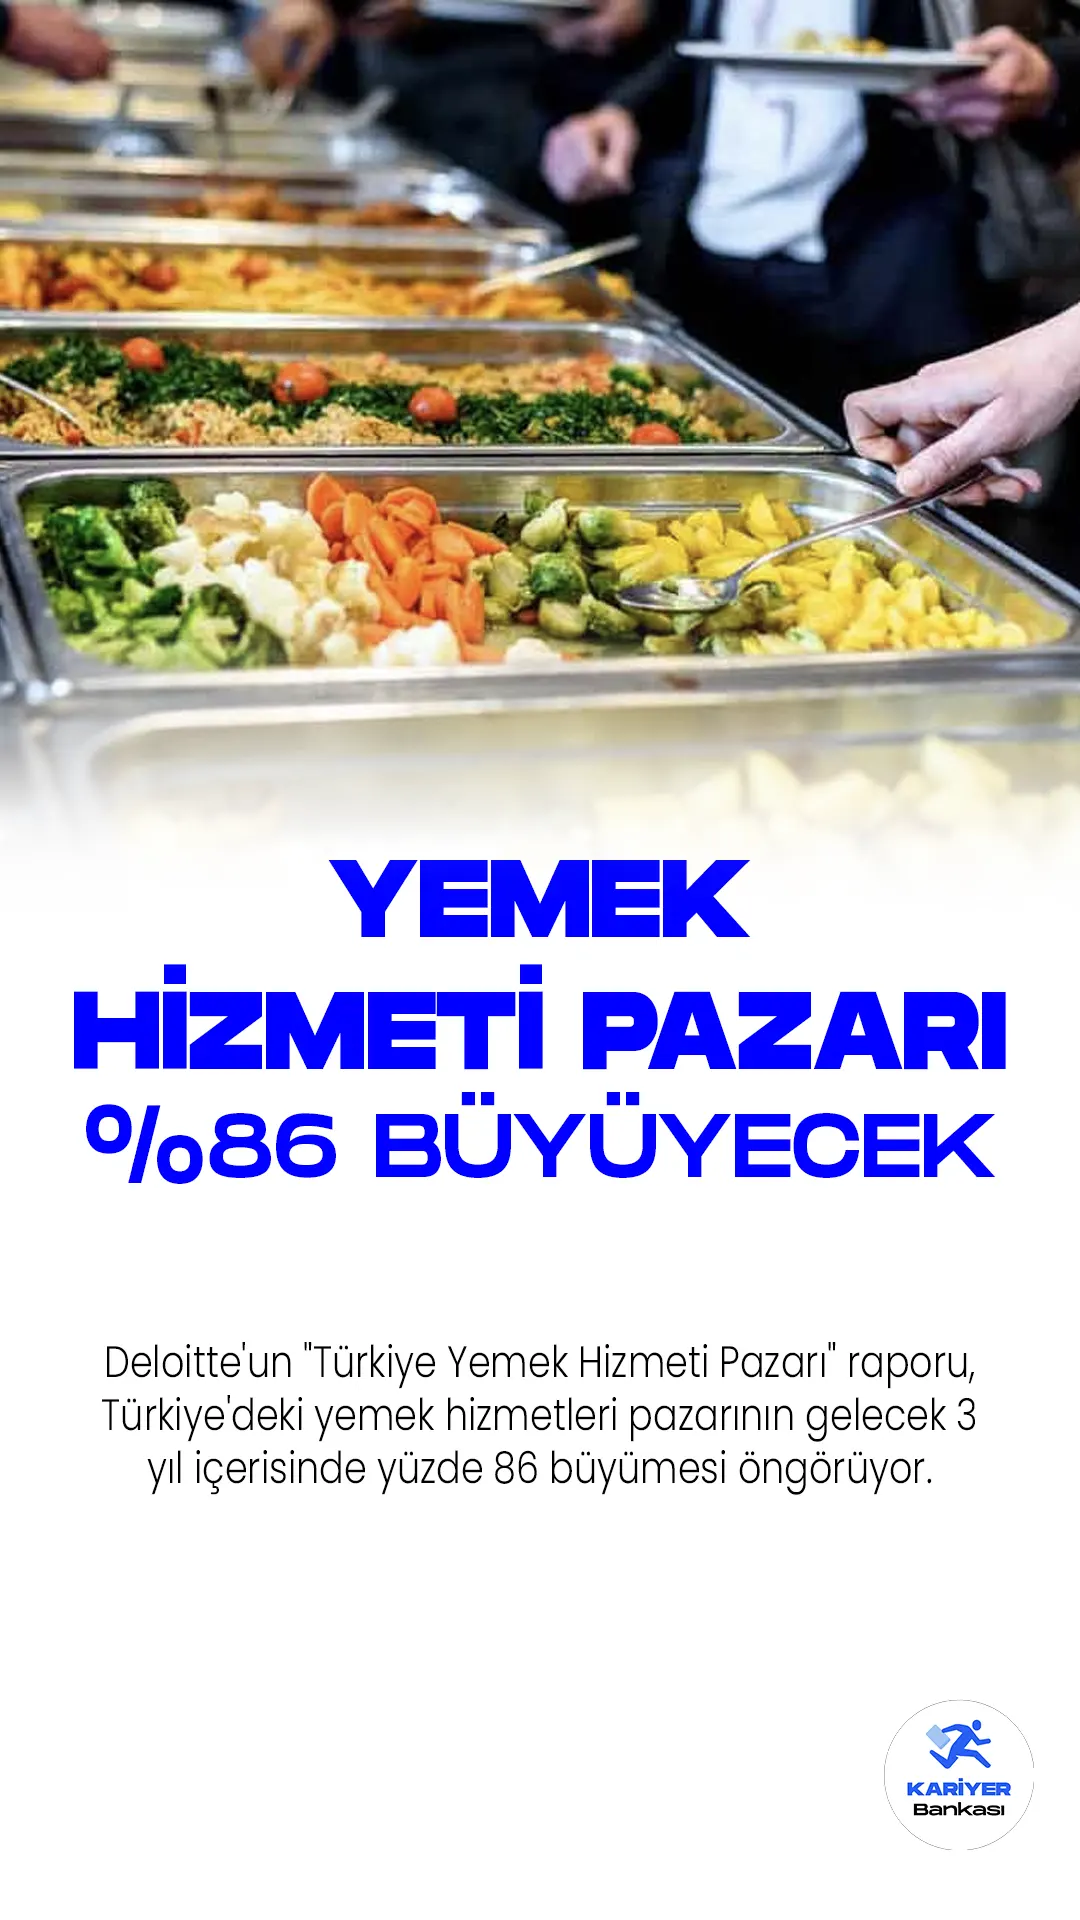 Deloitte'un "Türkiye Yemek Hizmeti Pazarı" raporu, Türkiye'deki yemek hizmetleri pazarının gelecek 3 yıl içerisinde yüzde 86 büyümesi öngörüyor.